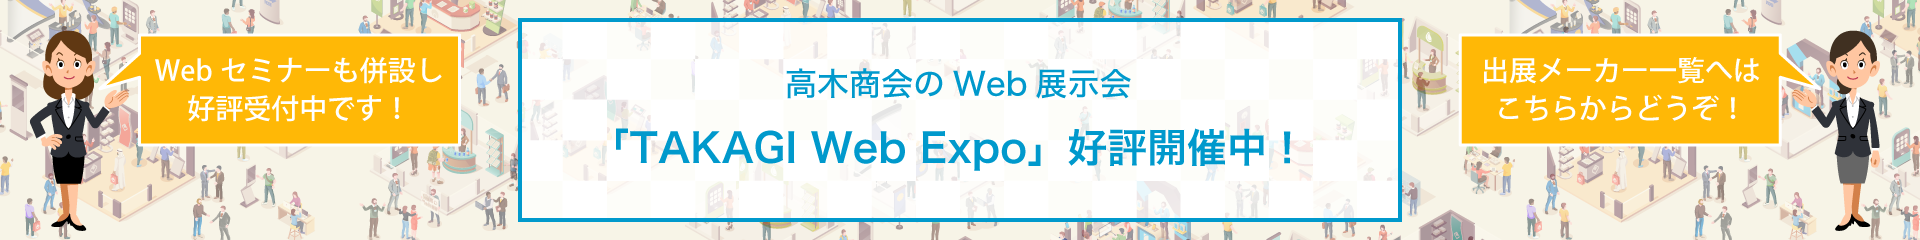 Web-Expo